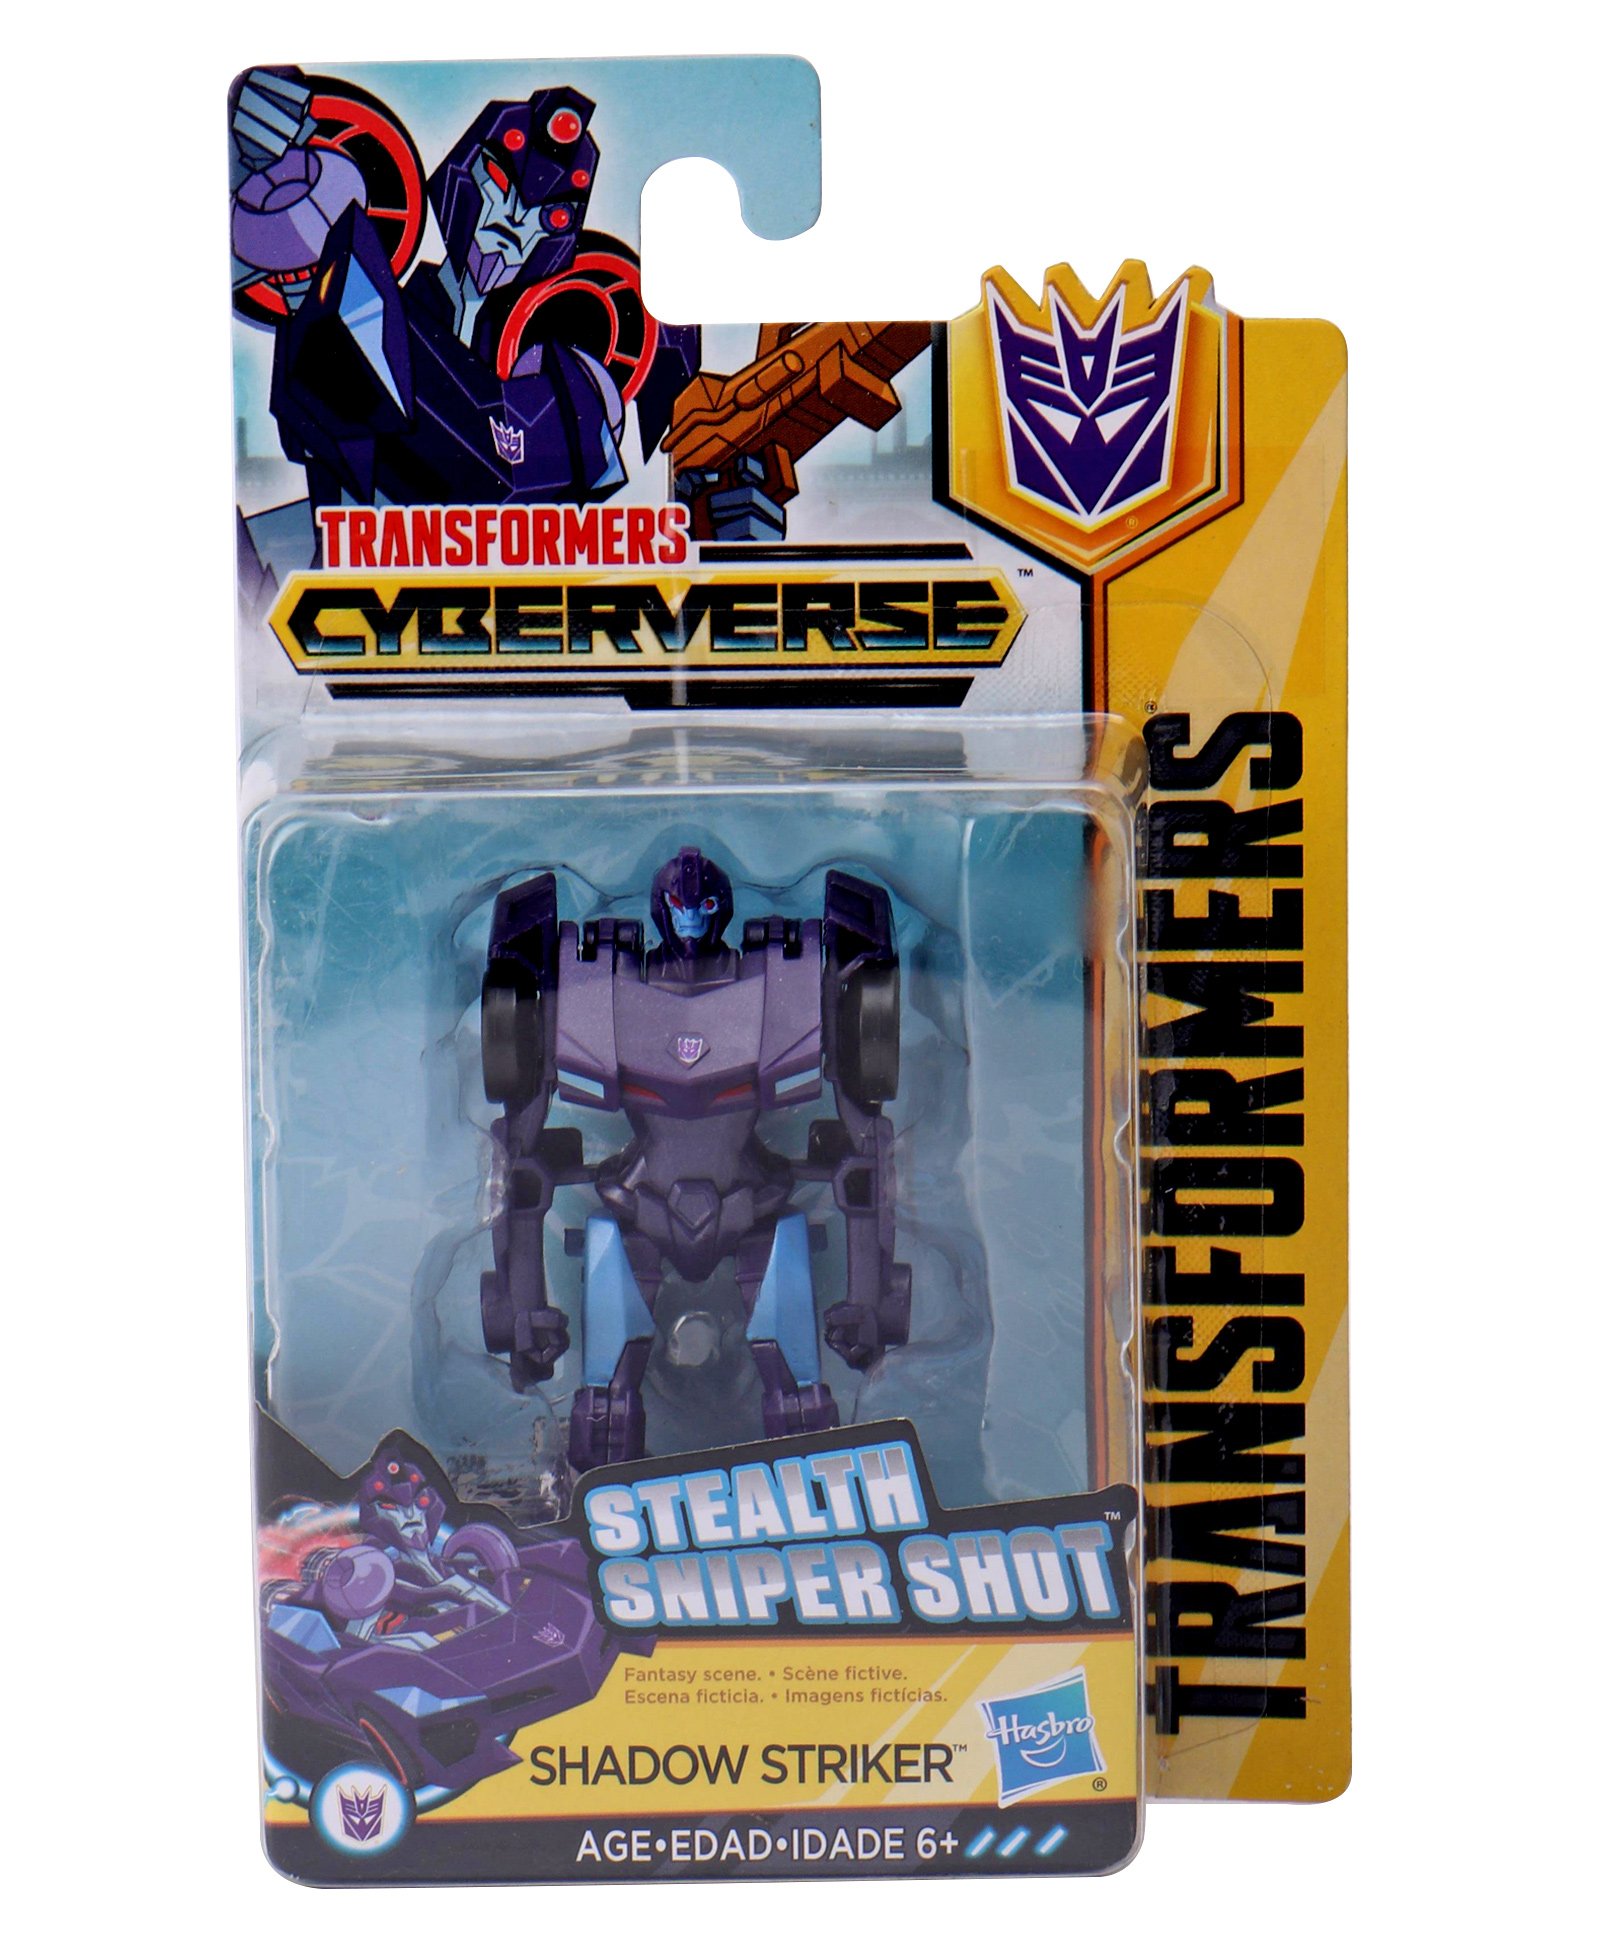 shadow striker transformers cyberverse